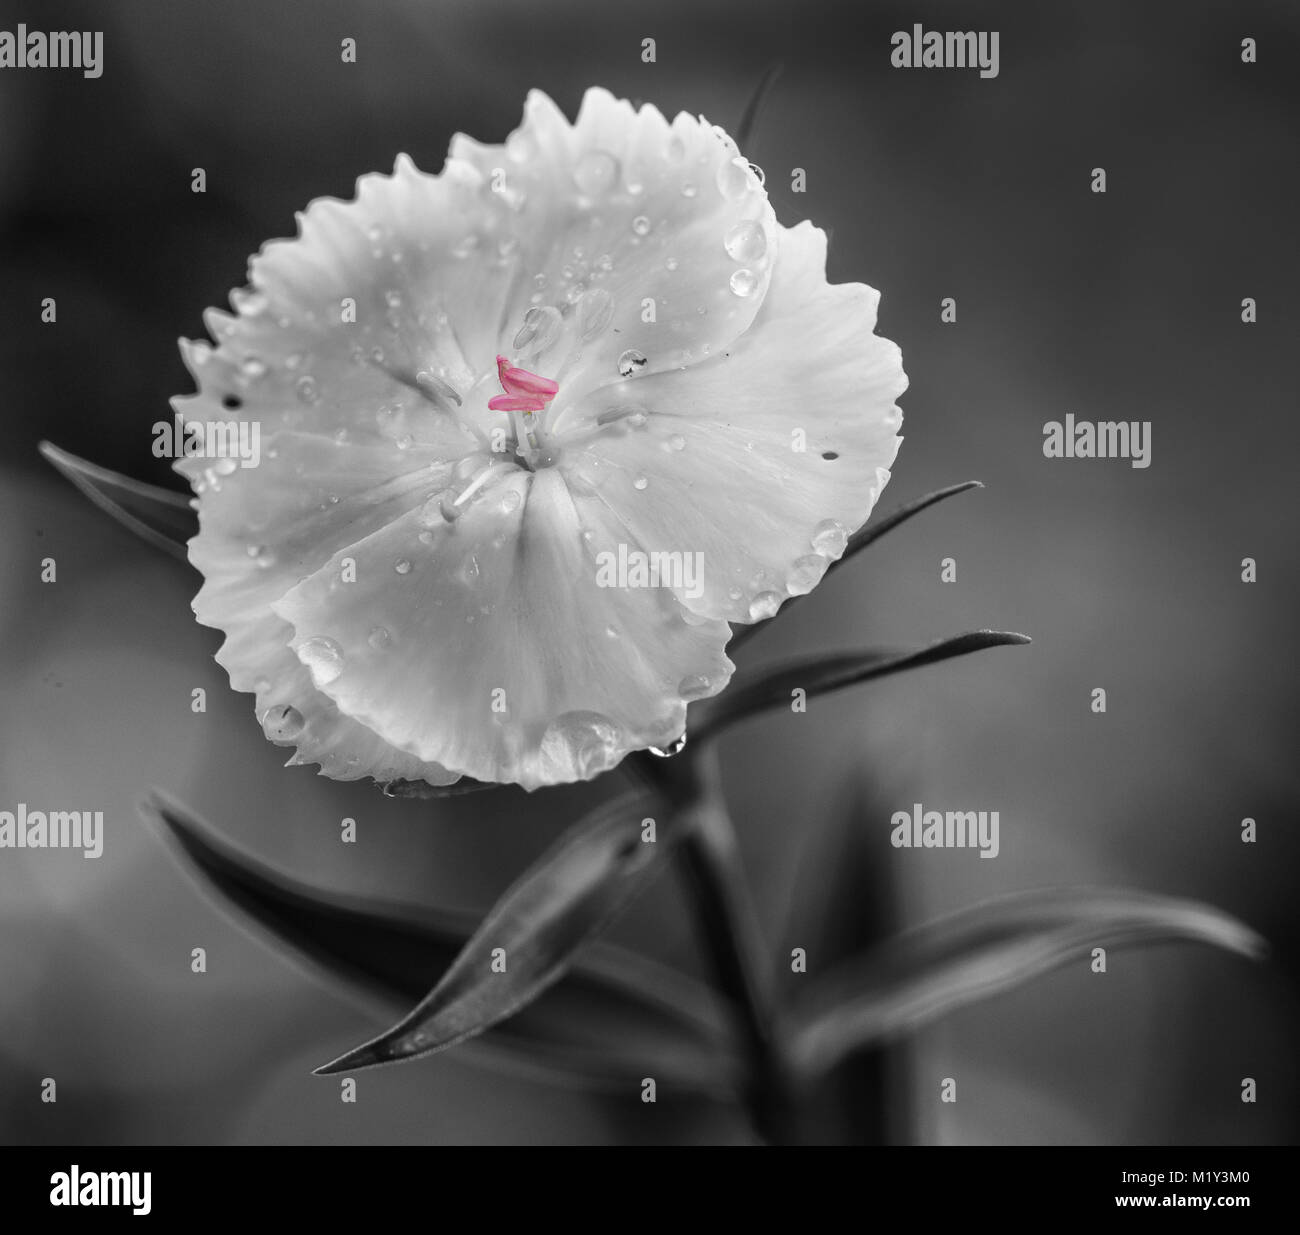 L'arrivo della primavera permette la macrofotografia di bellissimi fiori  selvatici, rose, e gocce di acqua dopo la pioggia, con una visione  particolare di essi Foto stock - Alamy